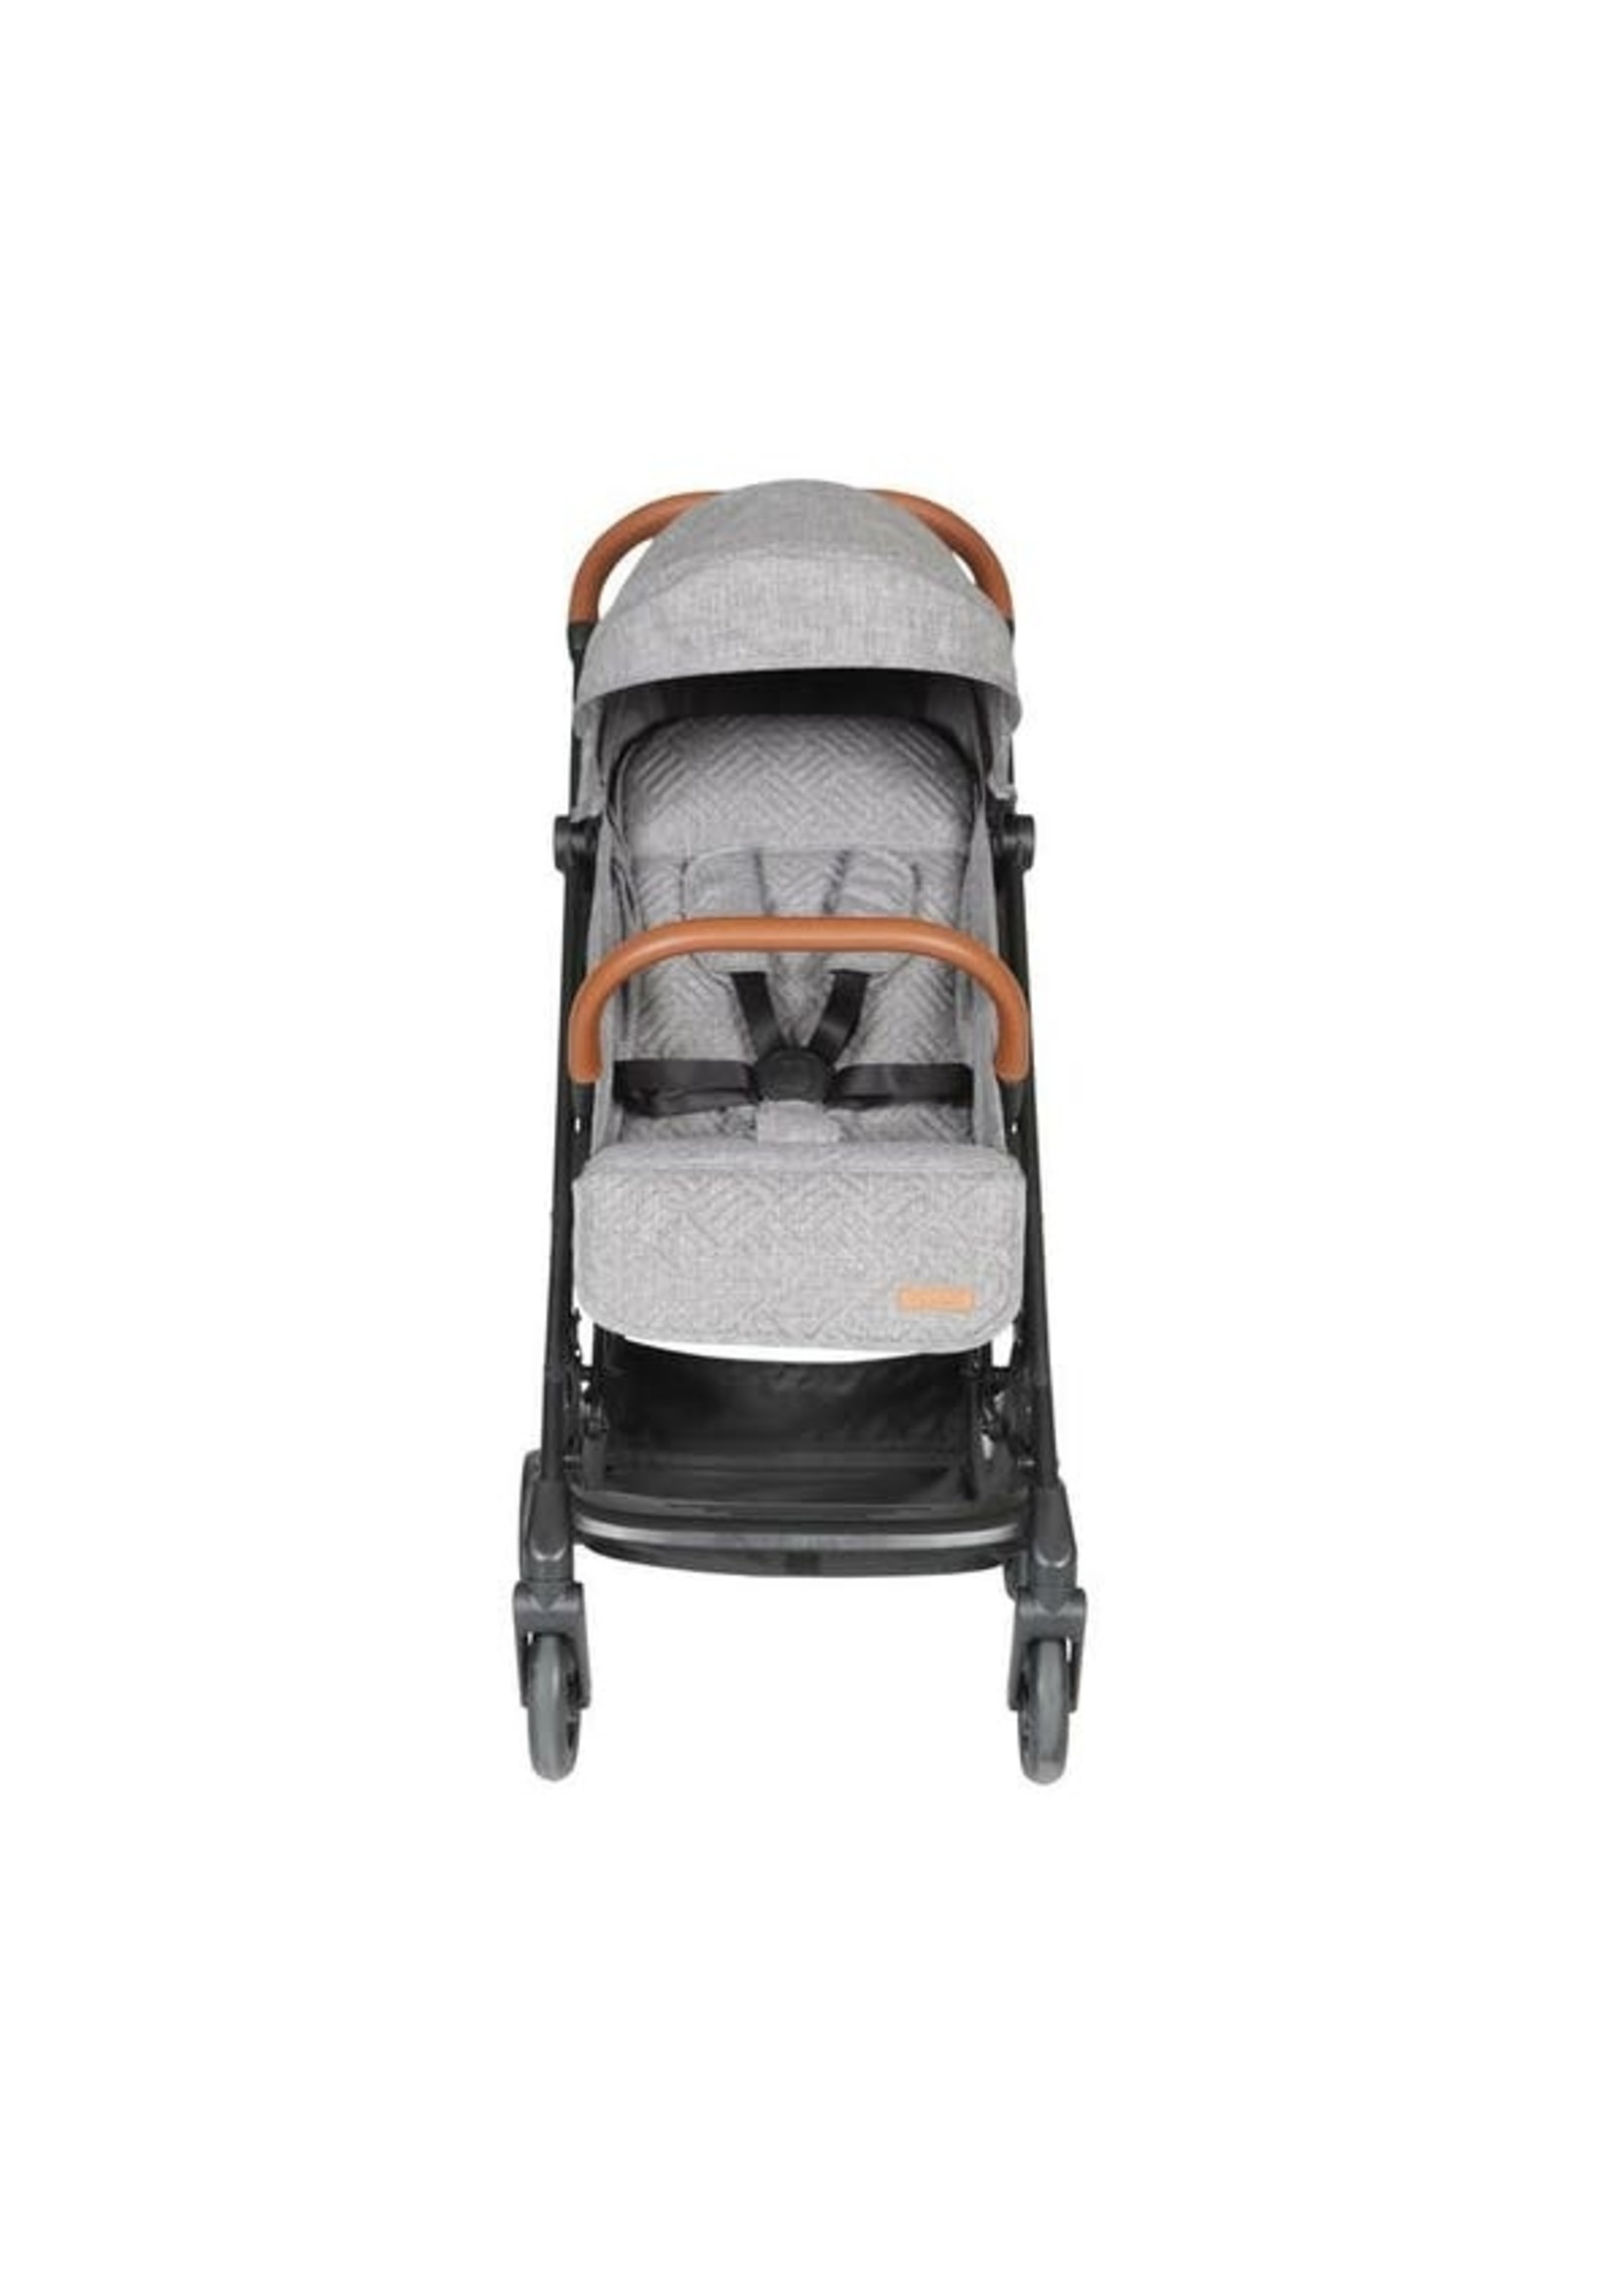 Little Dutch Little Dutch - Comfort stroller Grey